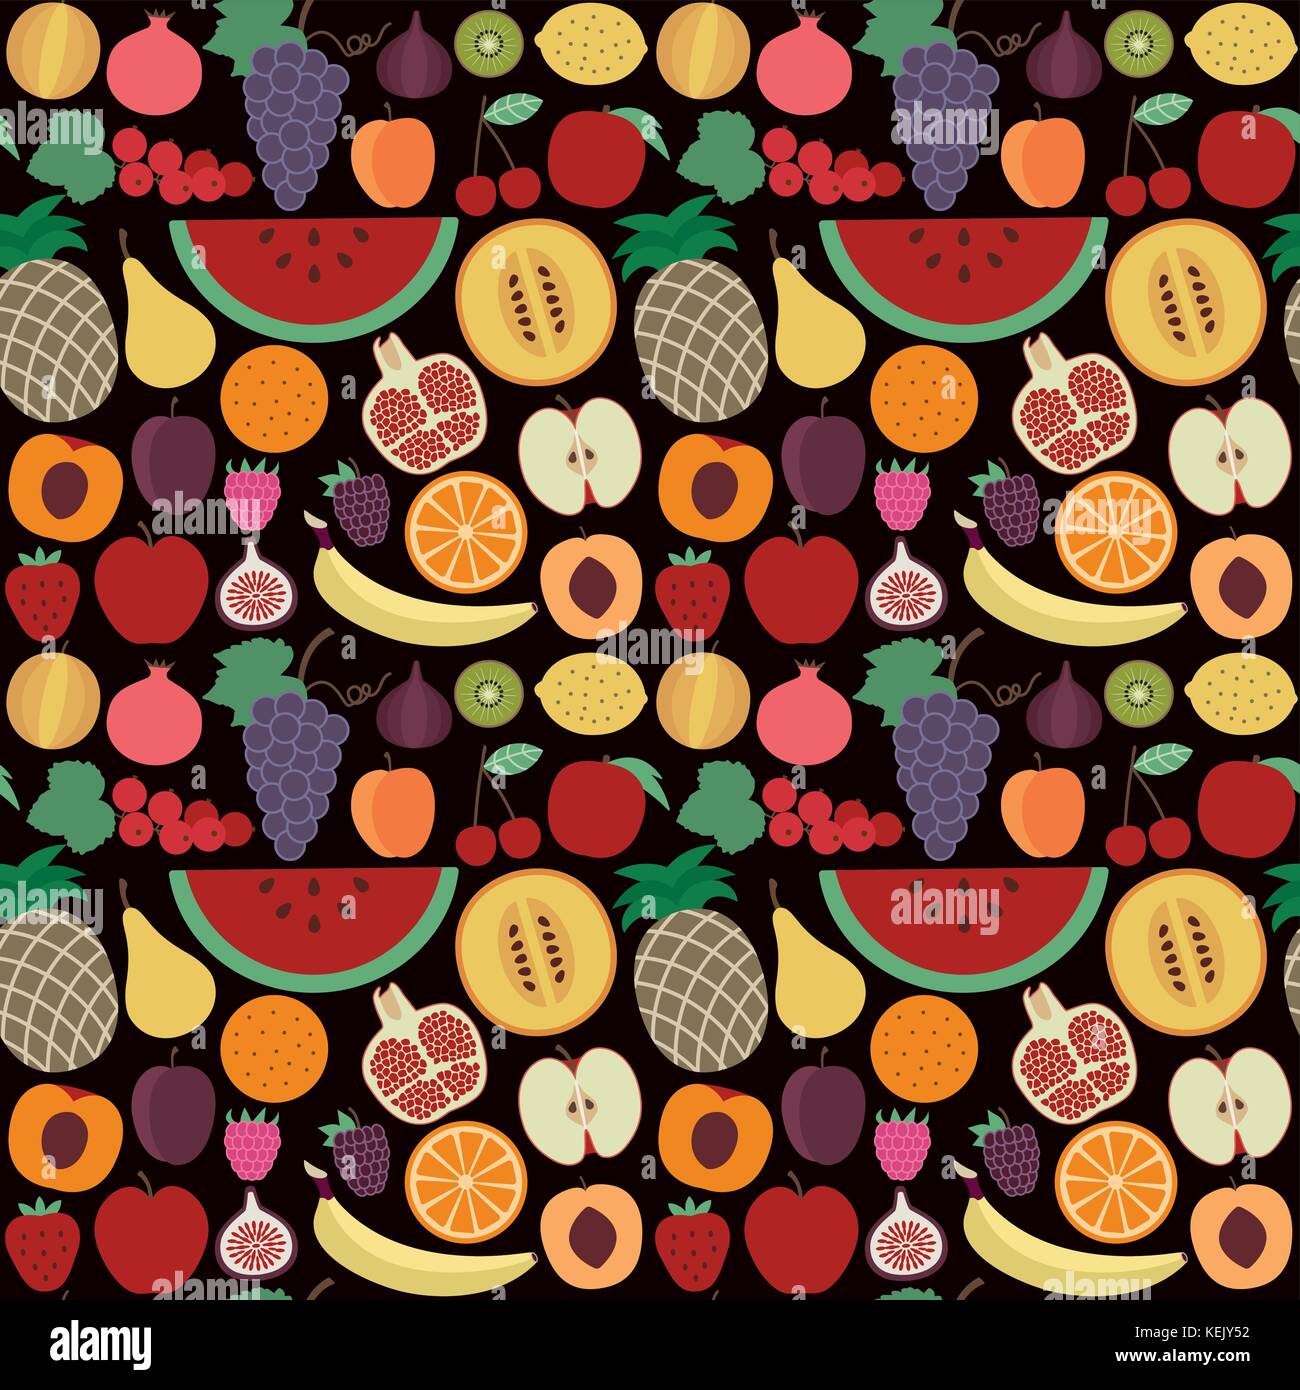 Vektor nahtlose Muster mit verschiedenen Früchten auf schwarzem Hintergrund. Stock Vektor